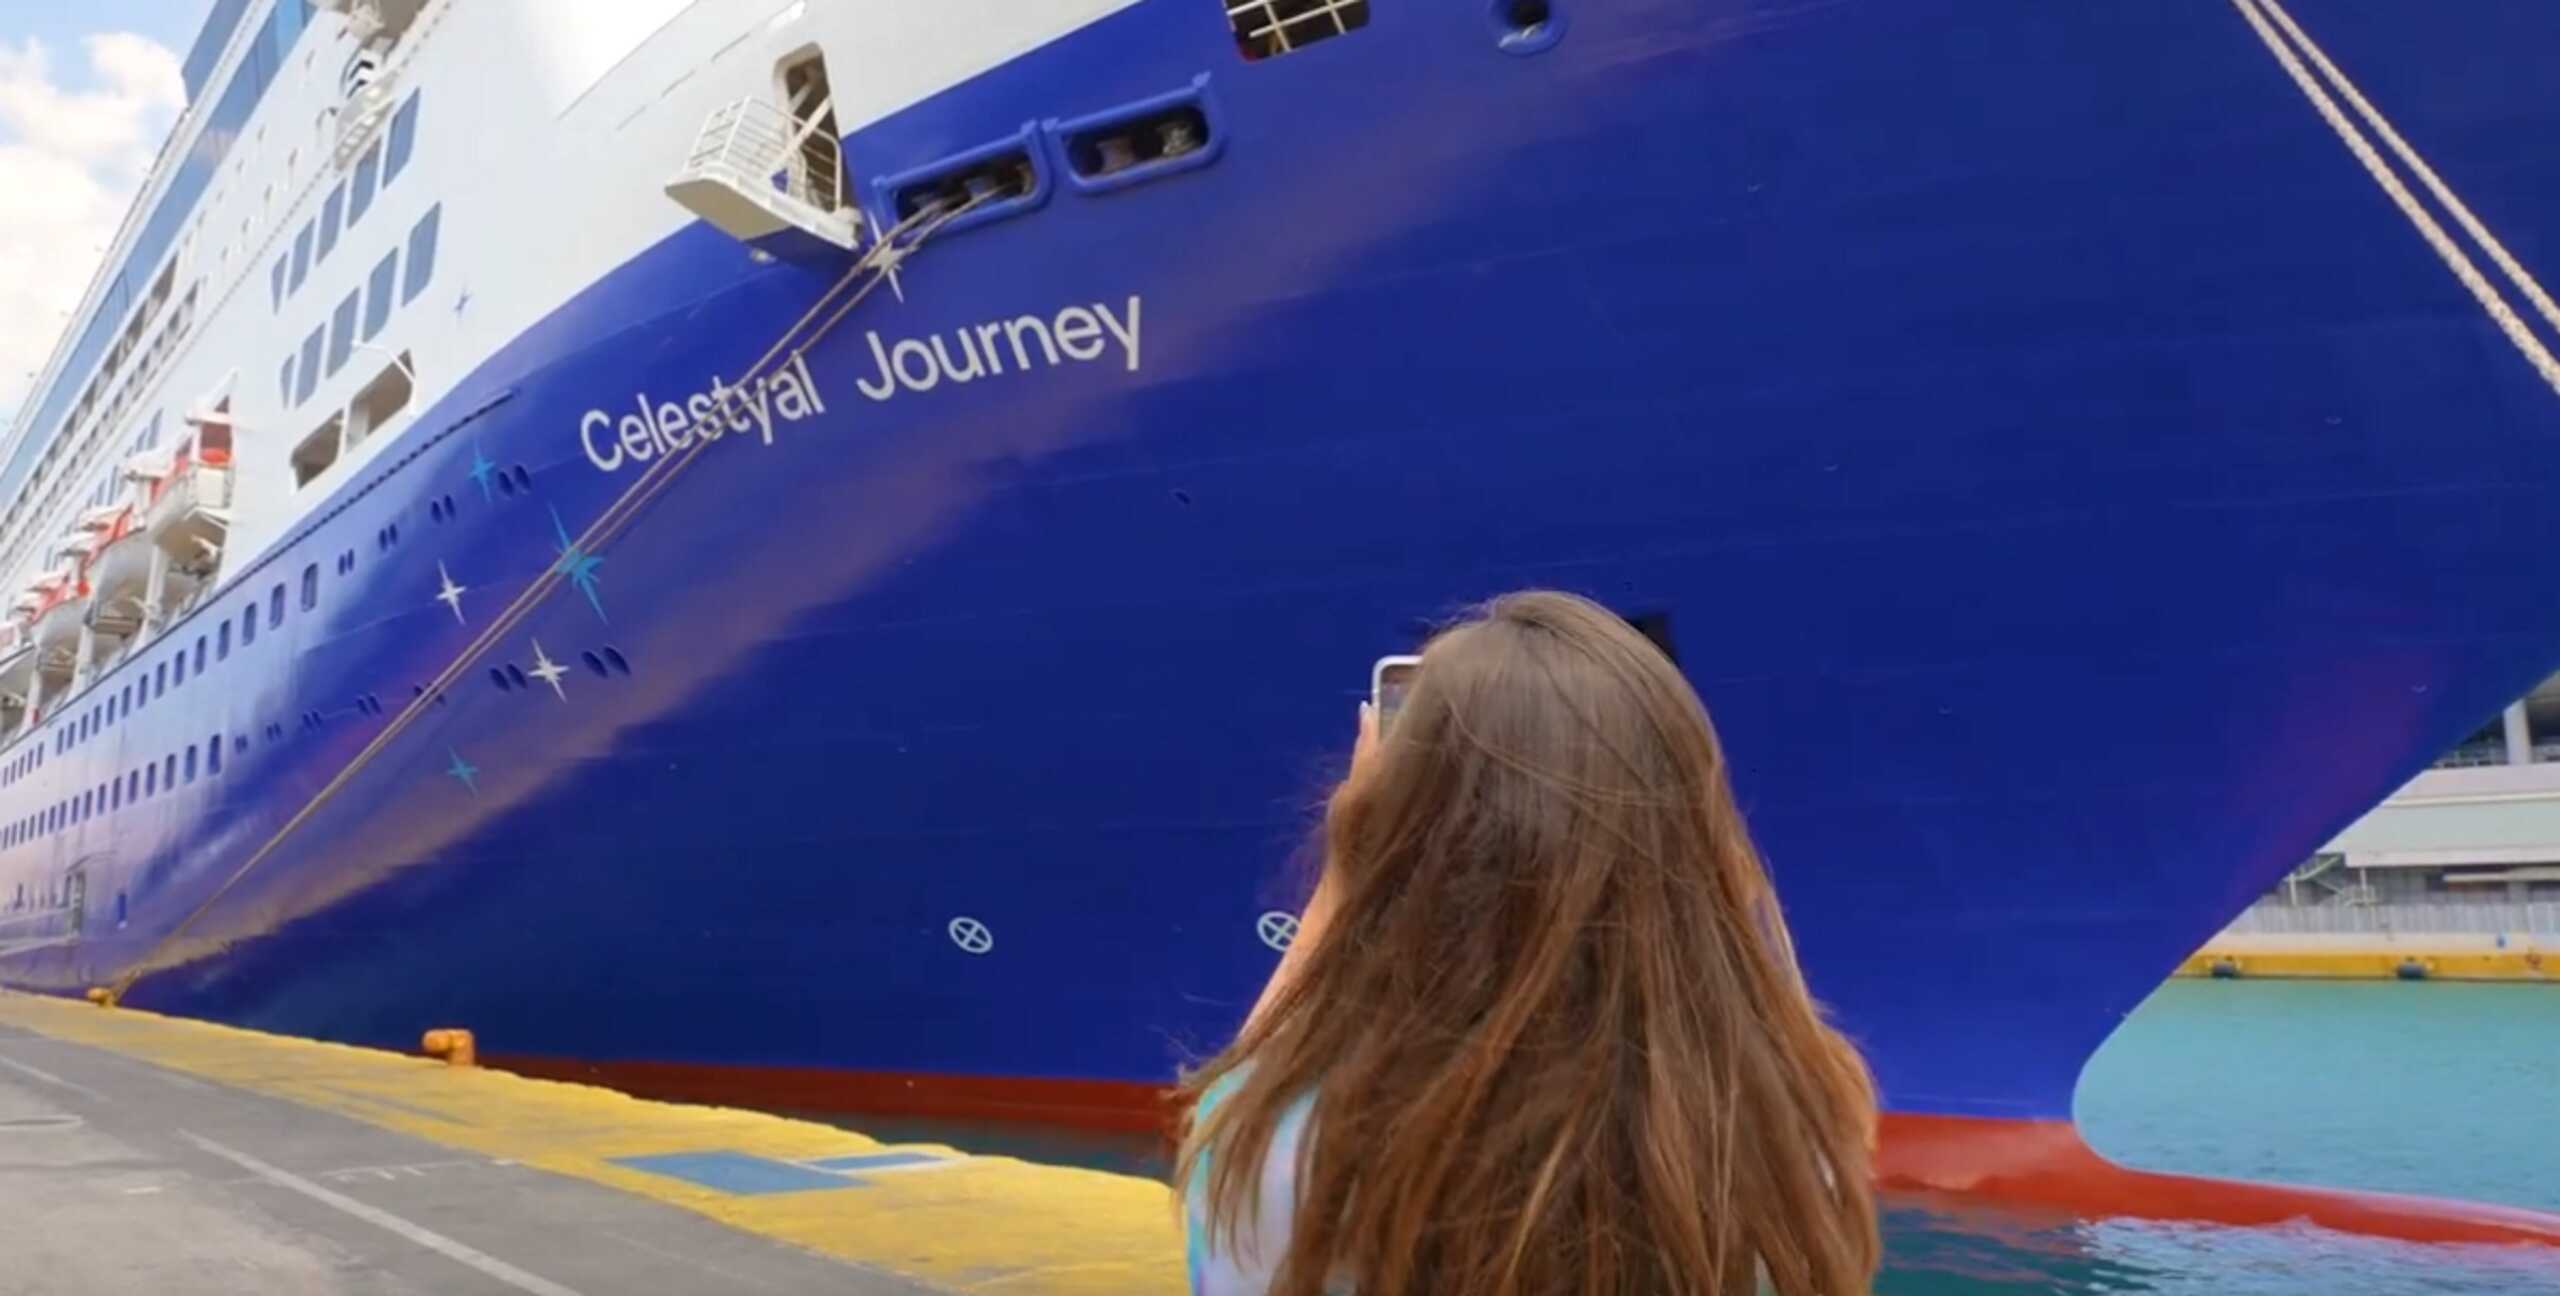 Θεσσαλονίκη: Μέσα στο κρουαζιερόπλοιο «Celestyal Journey» που έφερε 779 τουρίστες